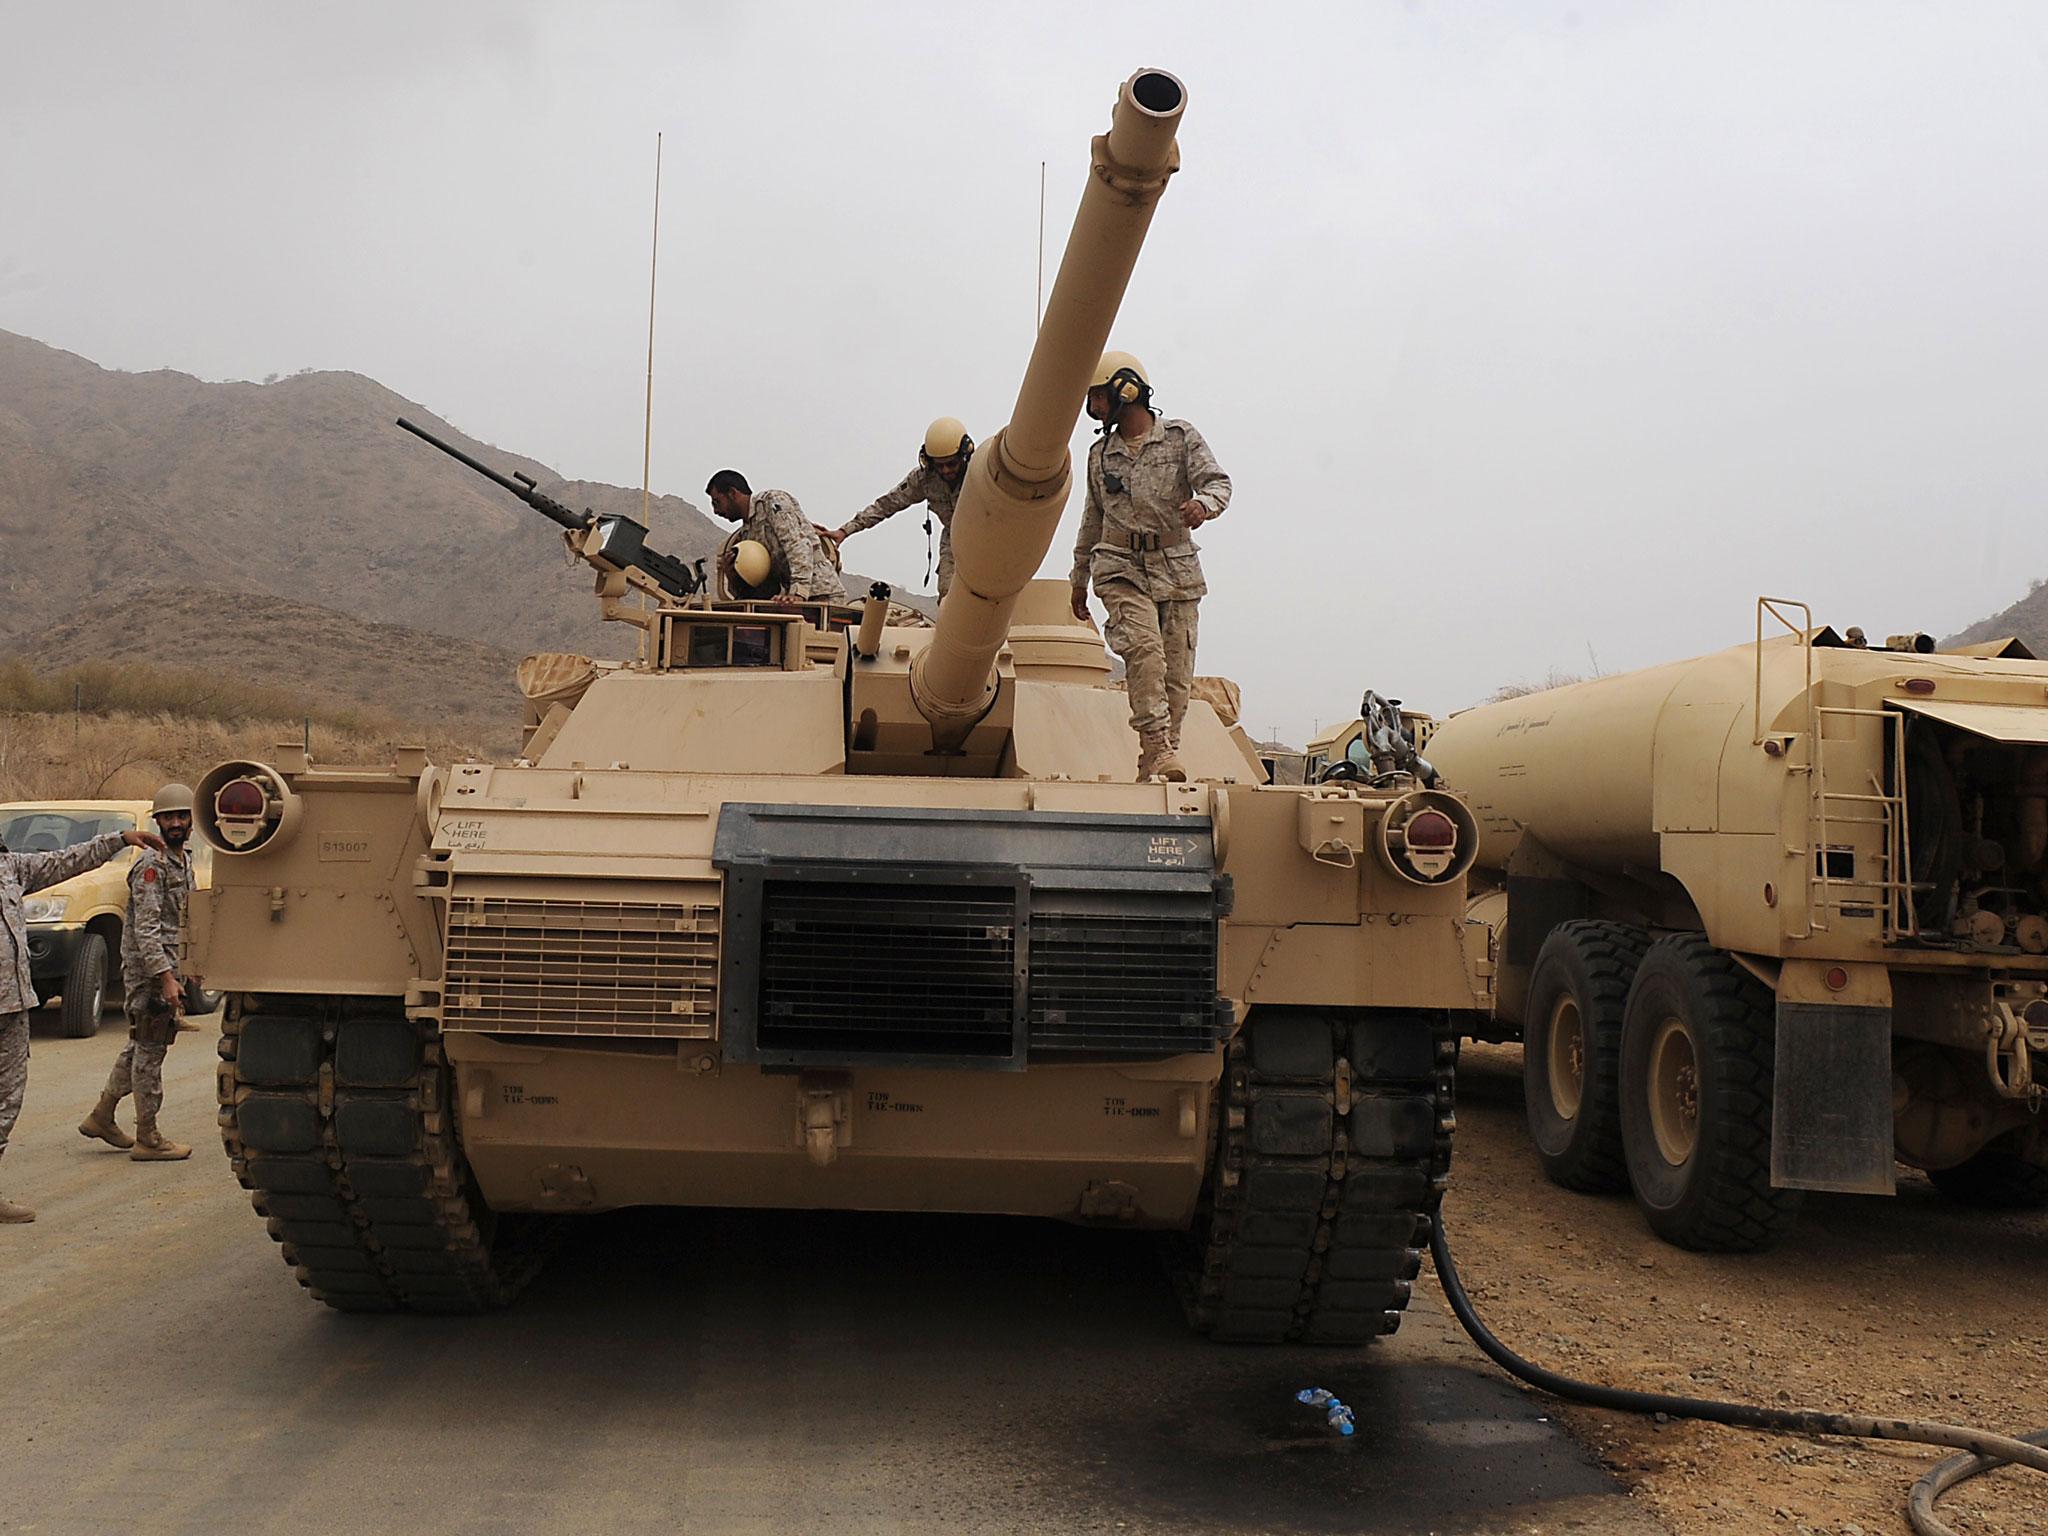 Saudi troops pictured atop their tank on the Saudi Arabian-Yemeni border